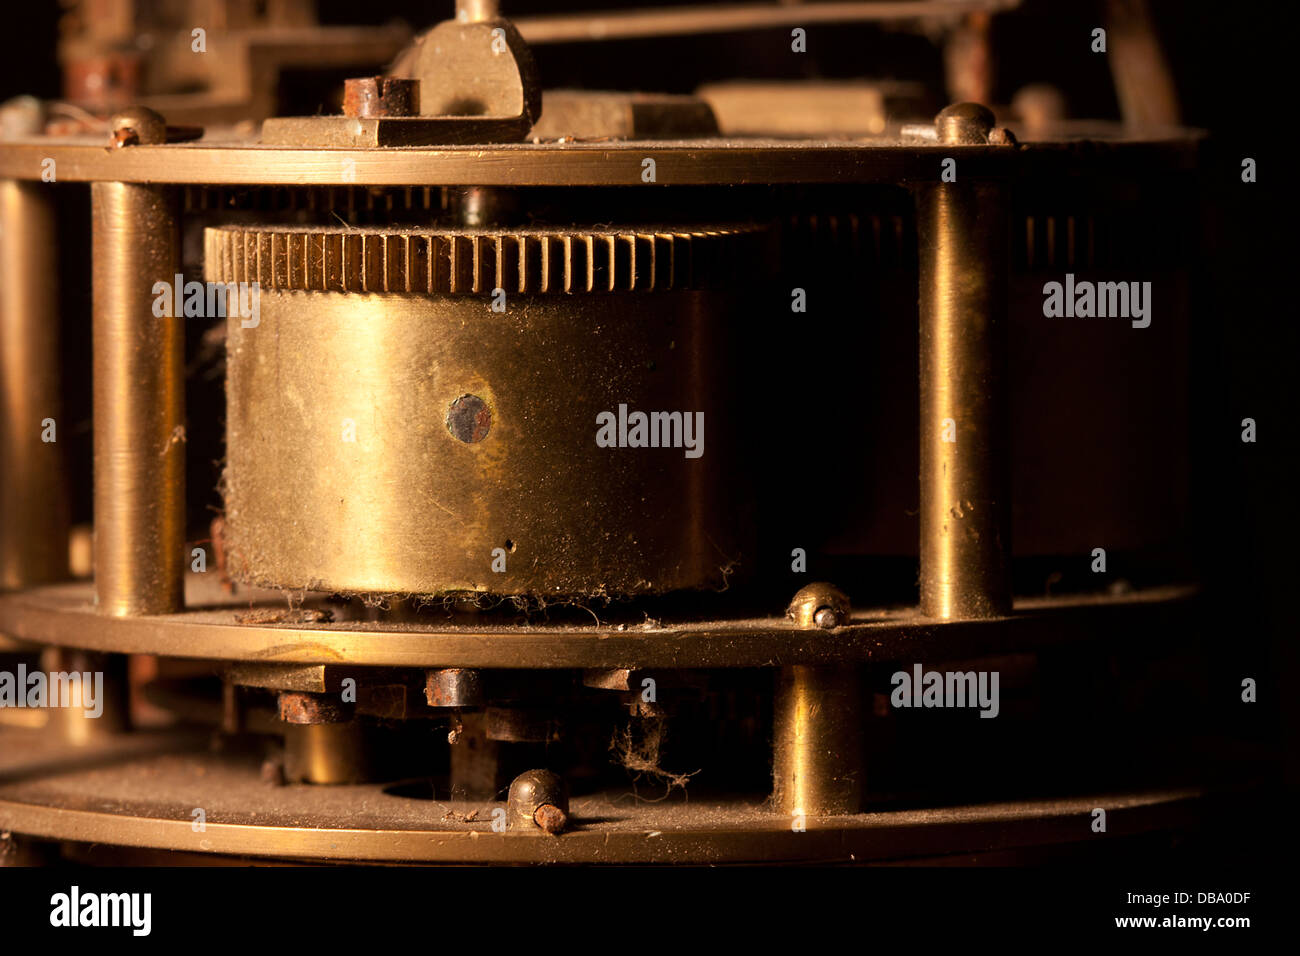 L'intérieur d'une vieille horloge victorienne montrant les engrenages et rouages du mécanisme Banque D'Images